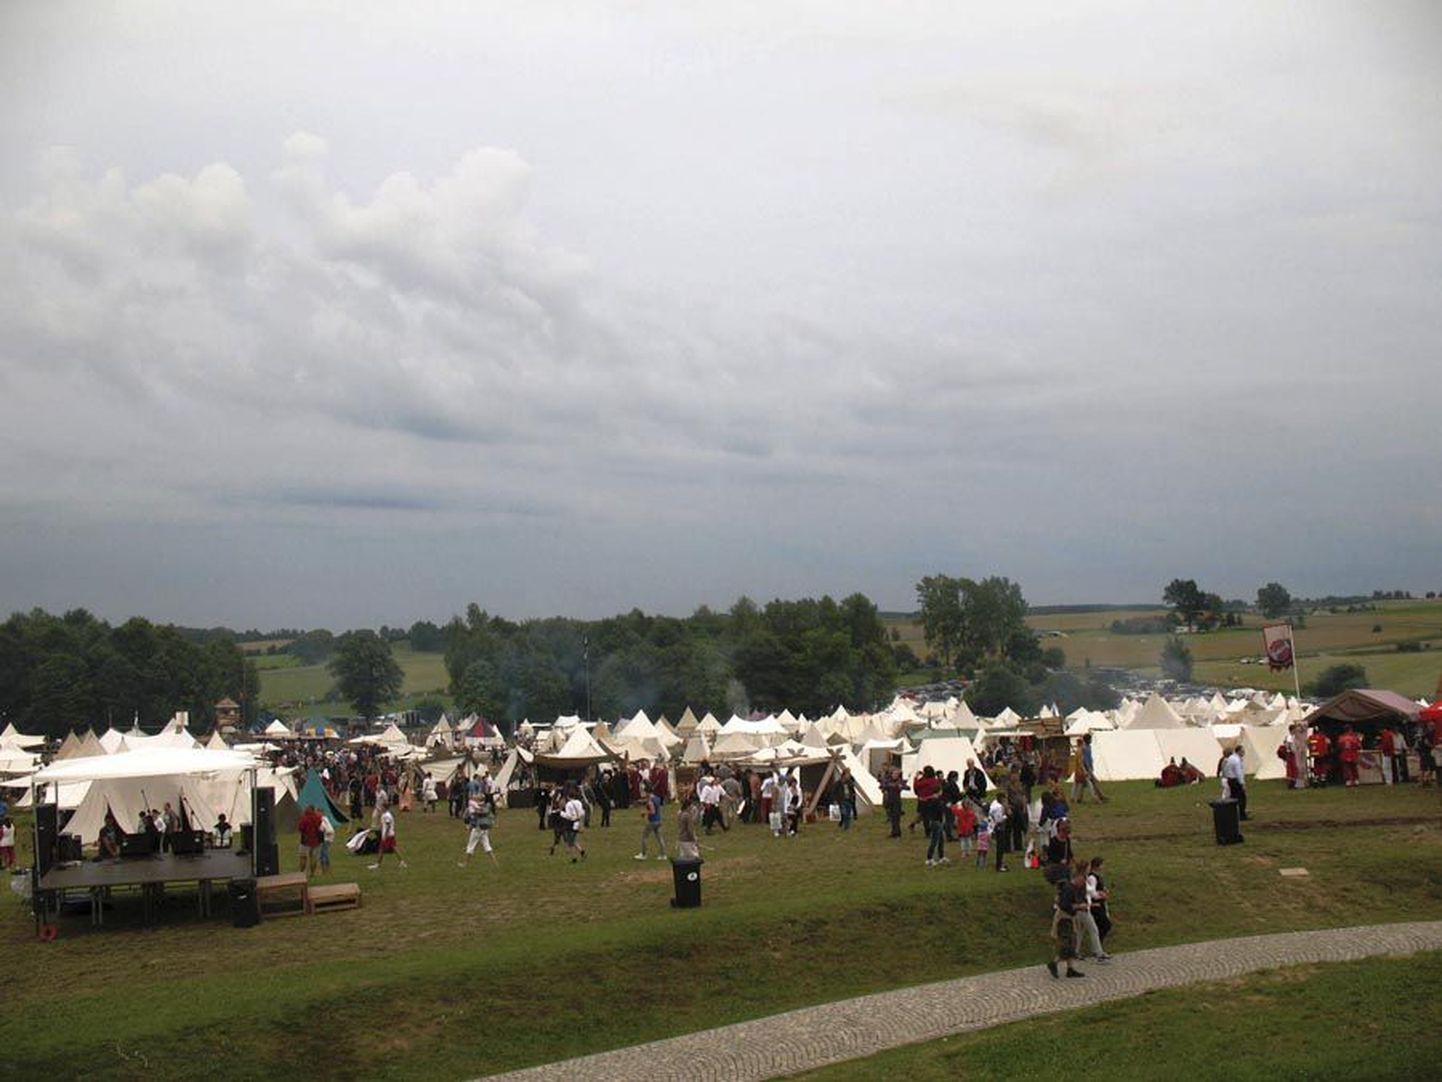 Grünwaldi aastapäeval korraldatakse endises lahingupaigas pompöösseid vaatemänge, mida tuleb uudistama palju väliskülalisi.